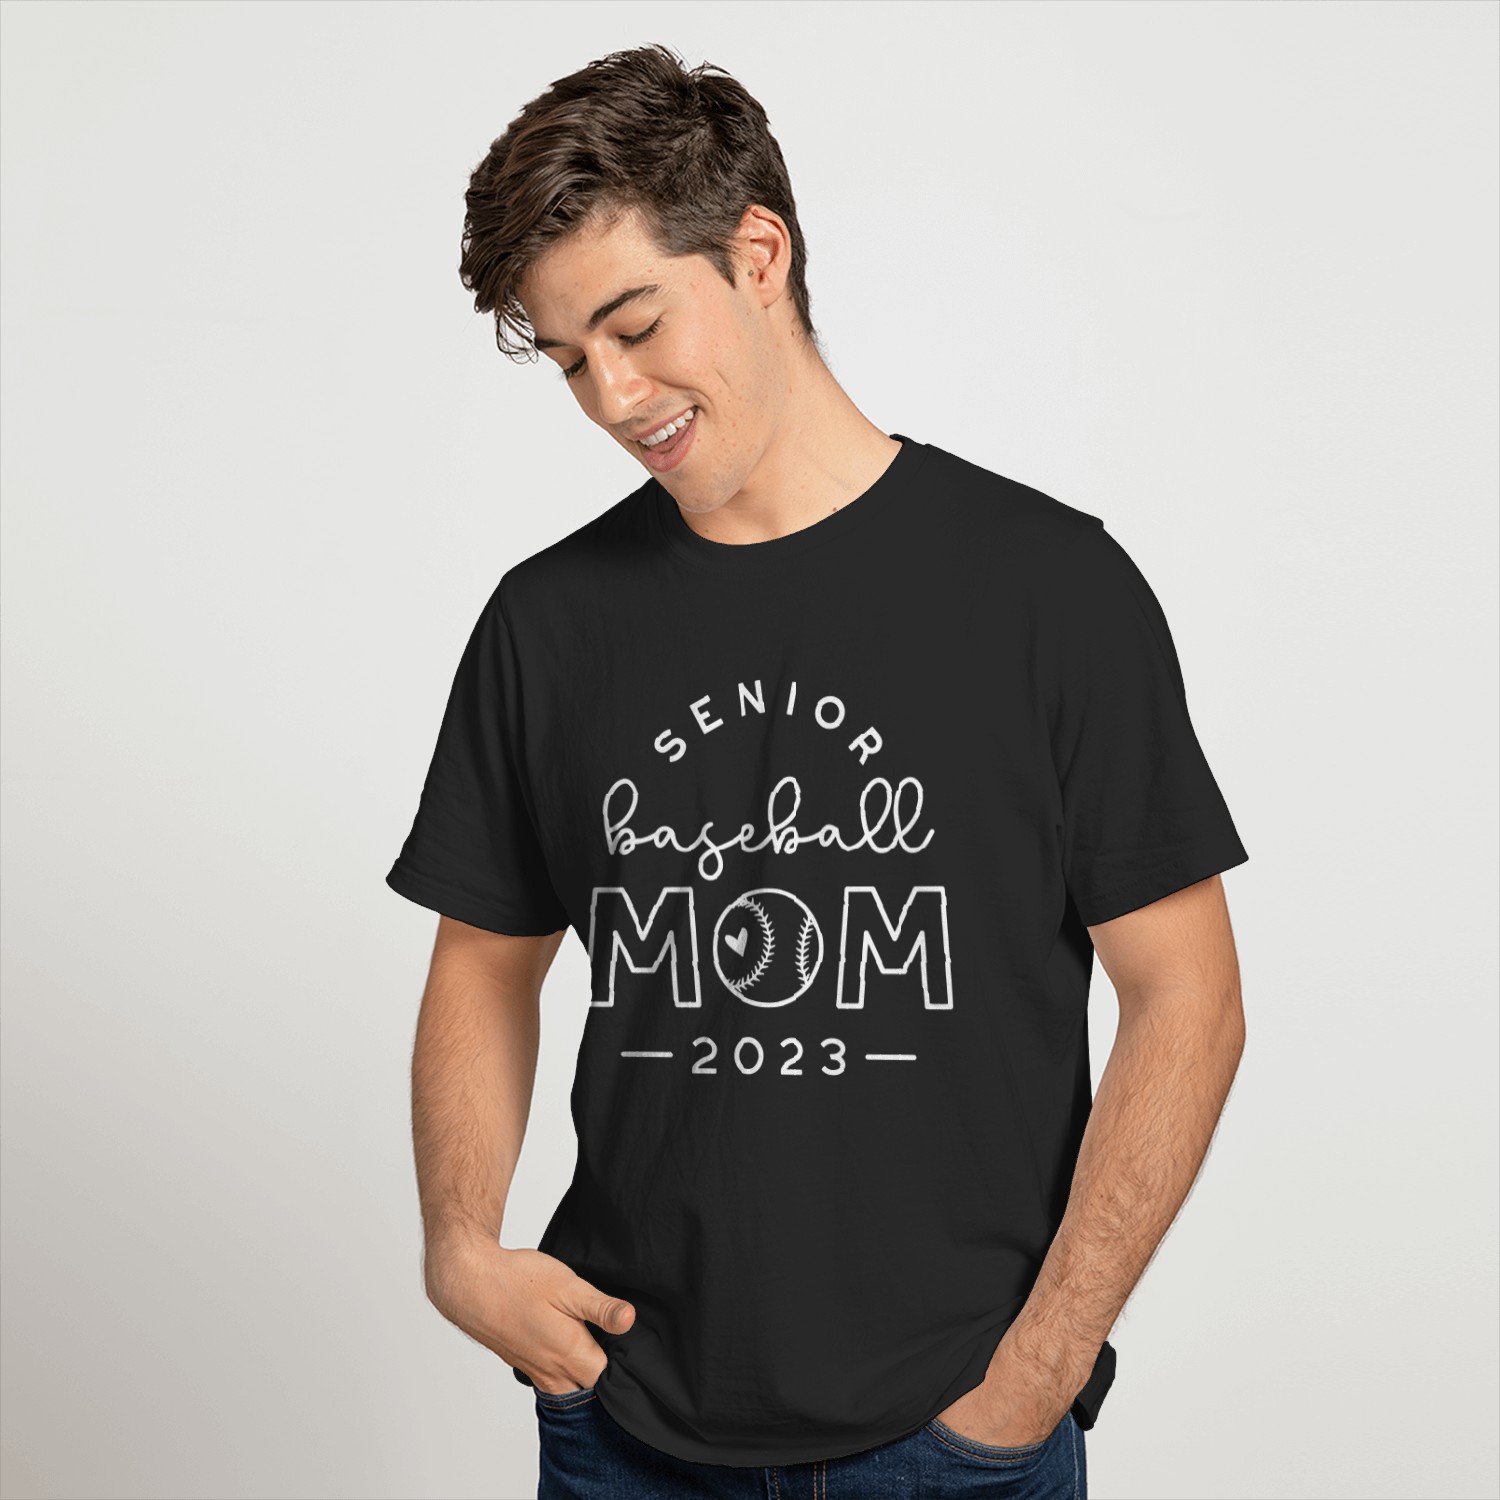 senior baseball mom shirts